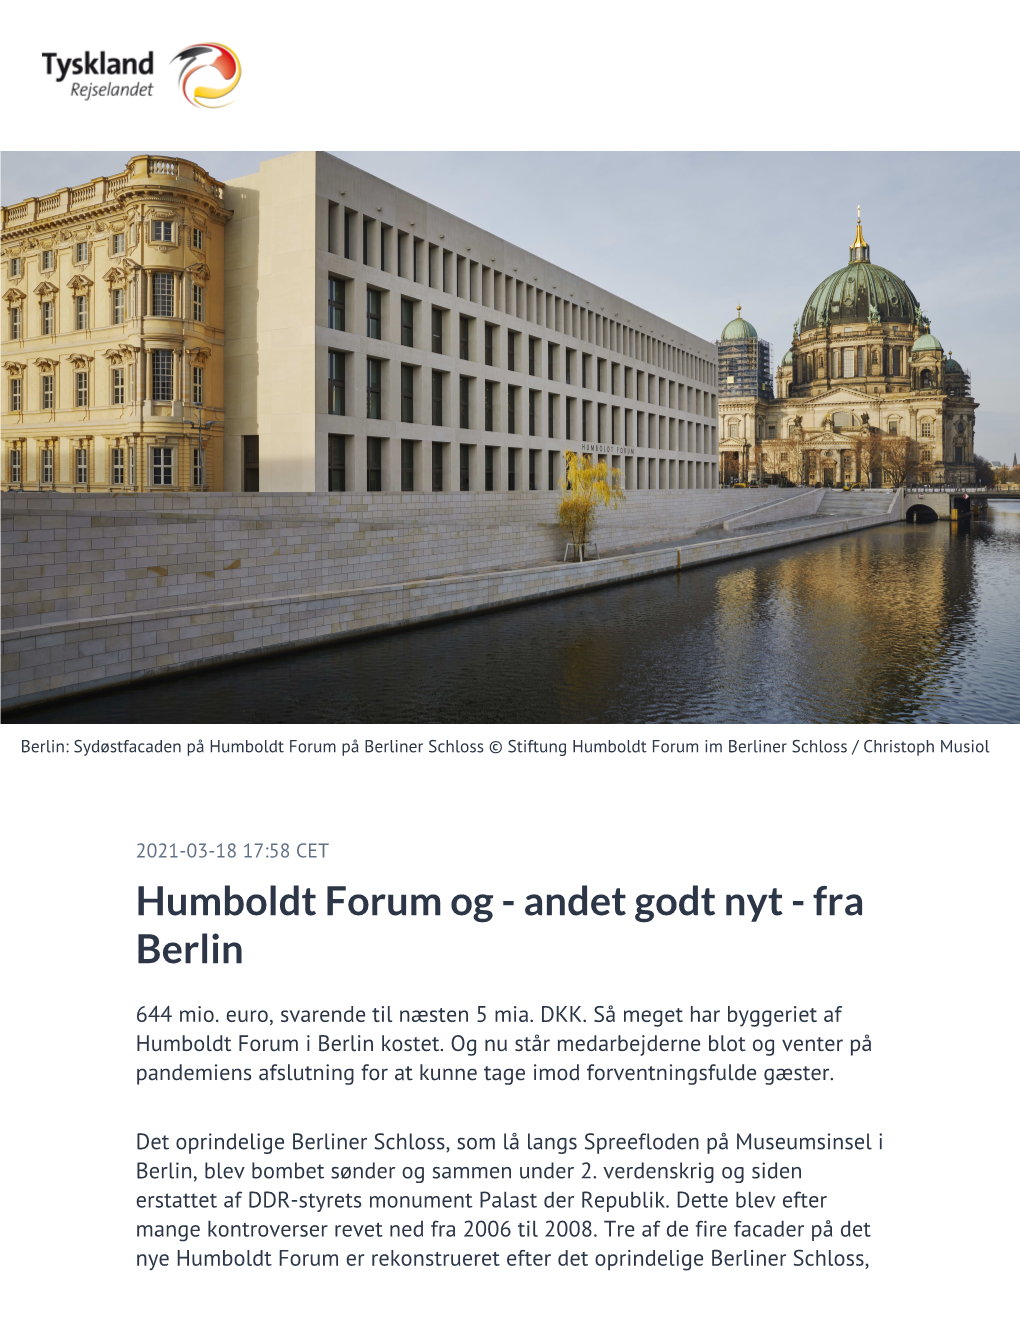 Humboldt Forum Og - Andet Godt Nyt - Fra Berlin